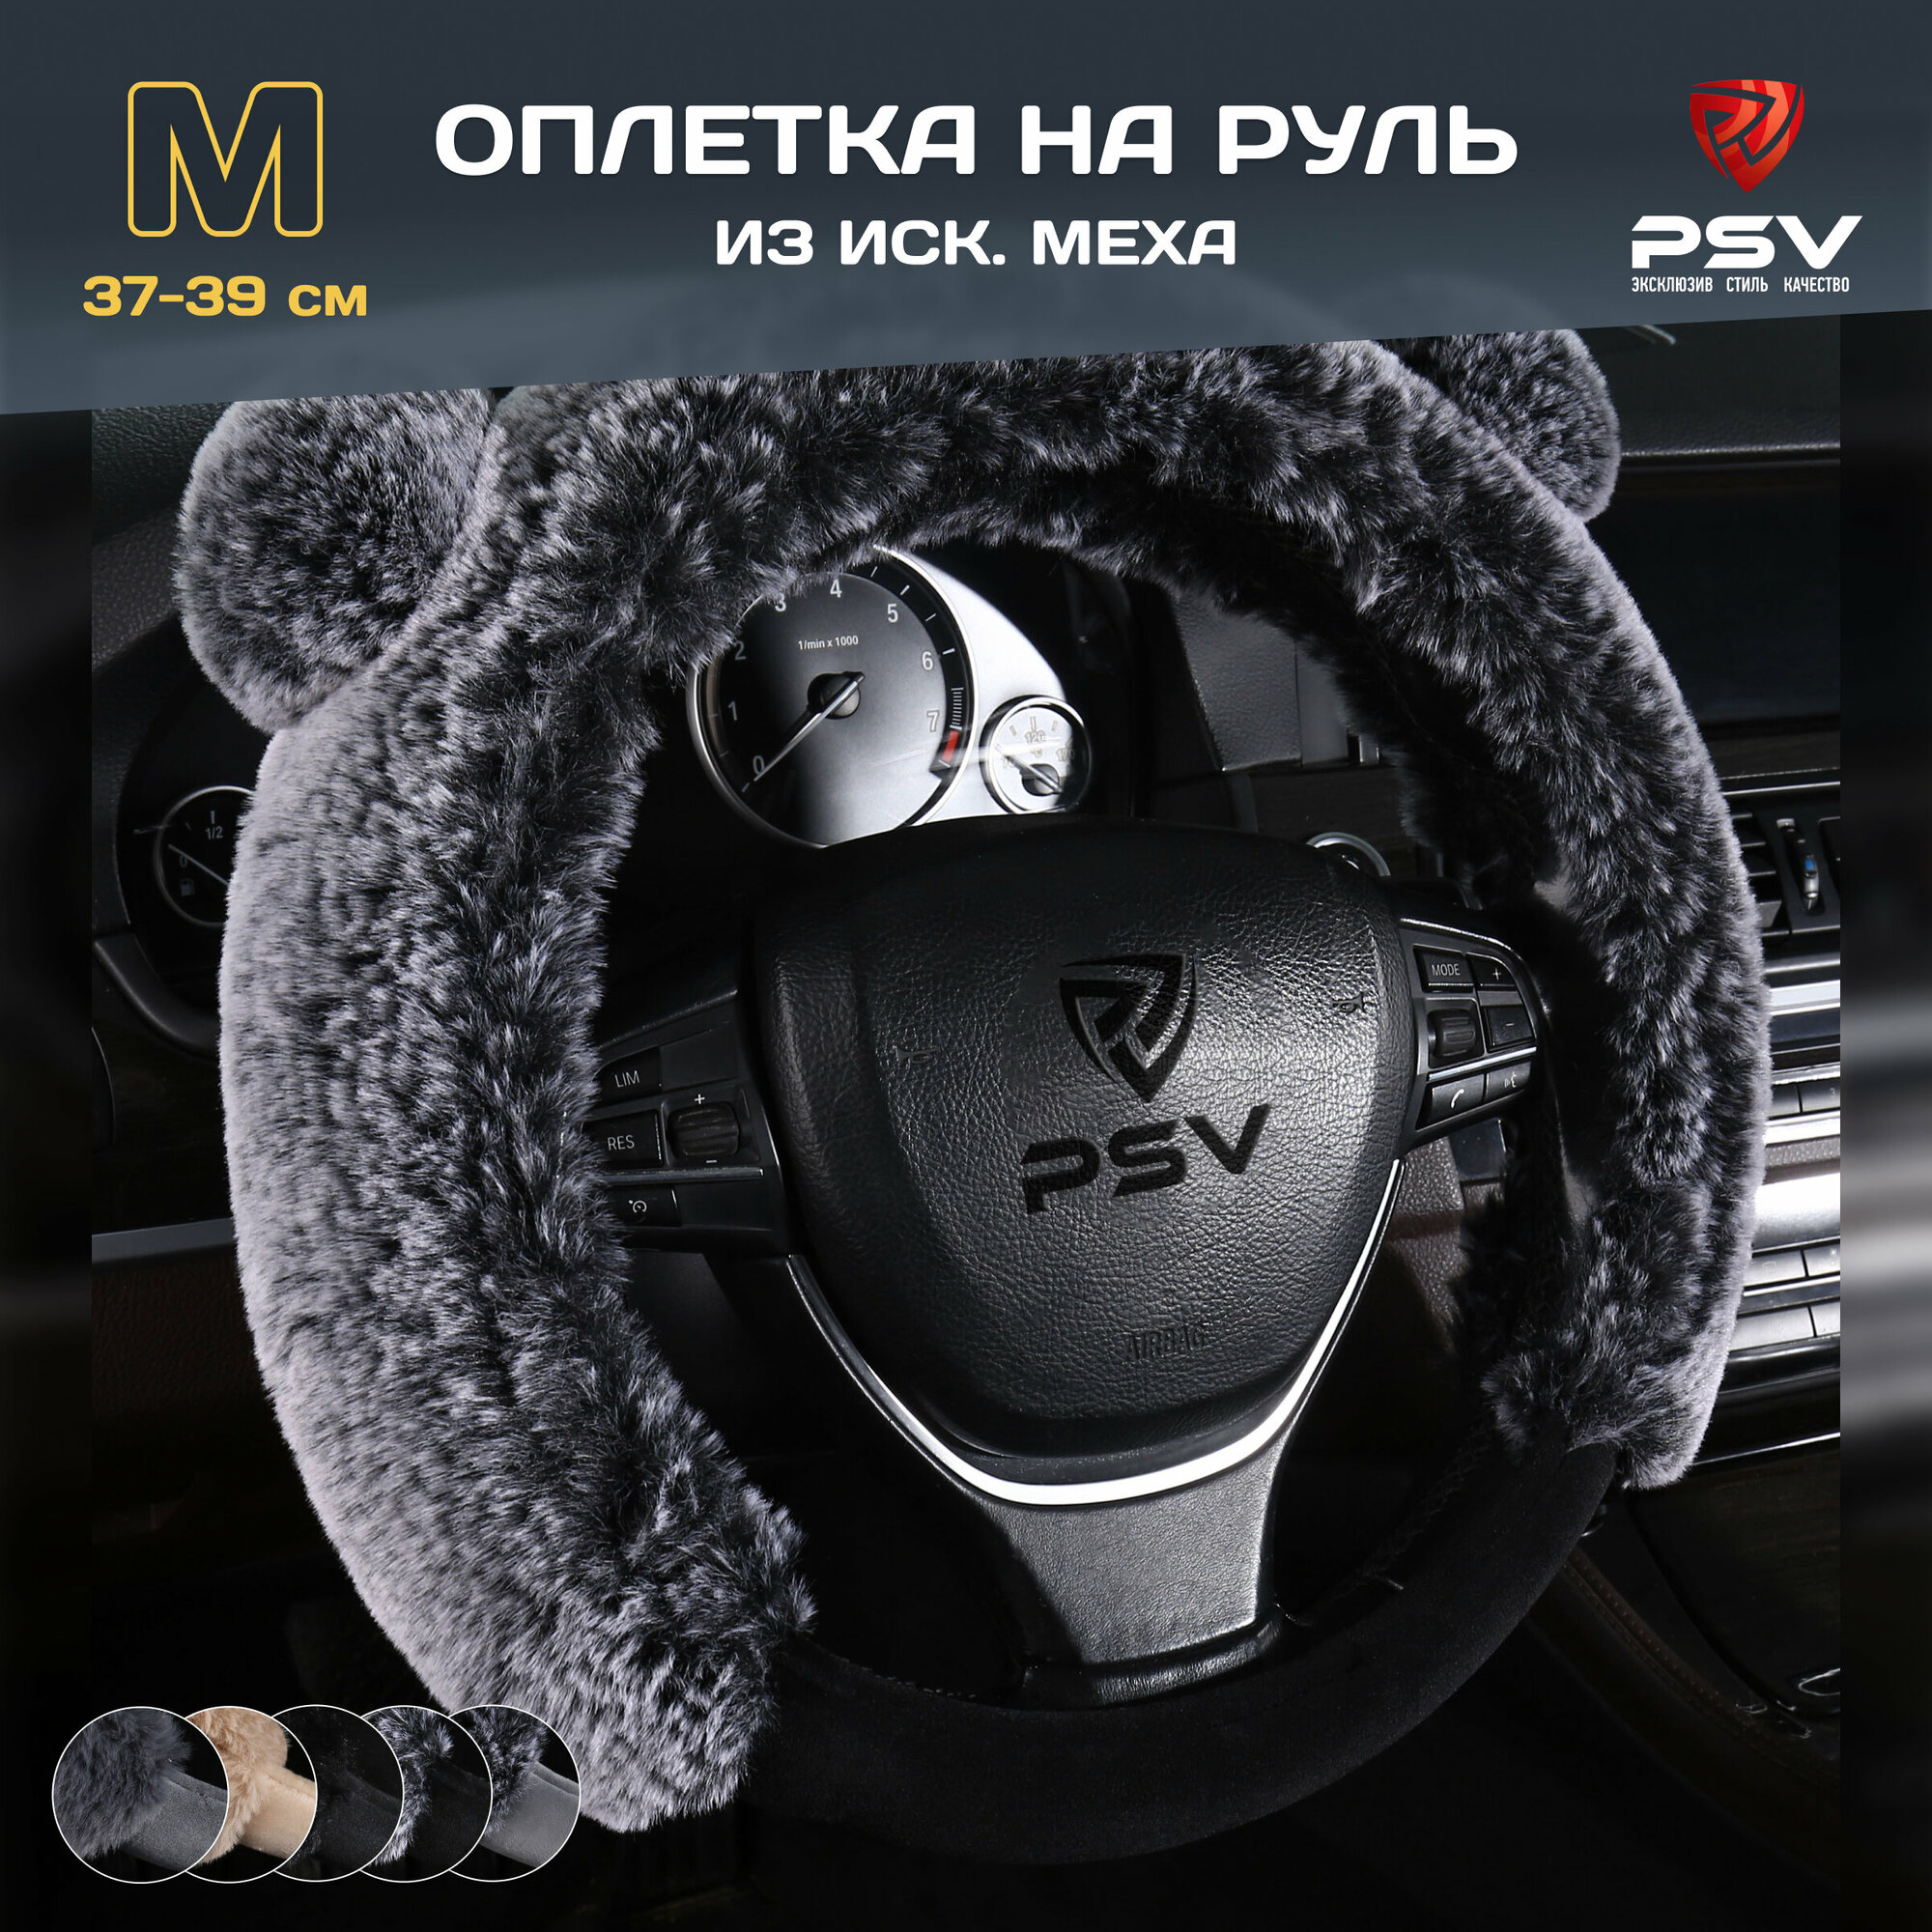 PSV 136095 Оплетка на руль M "PSV" Mishka Premium искусственный мех, черный/серый (черный велюр)